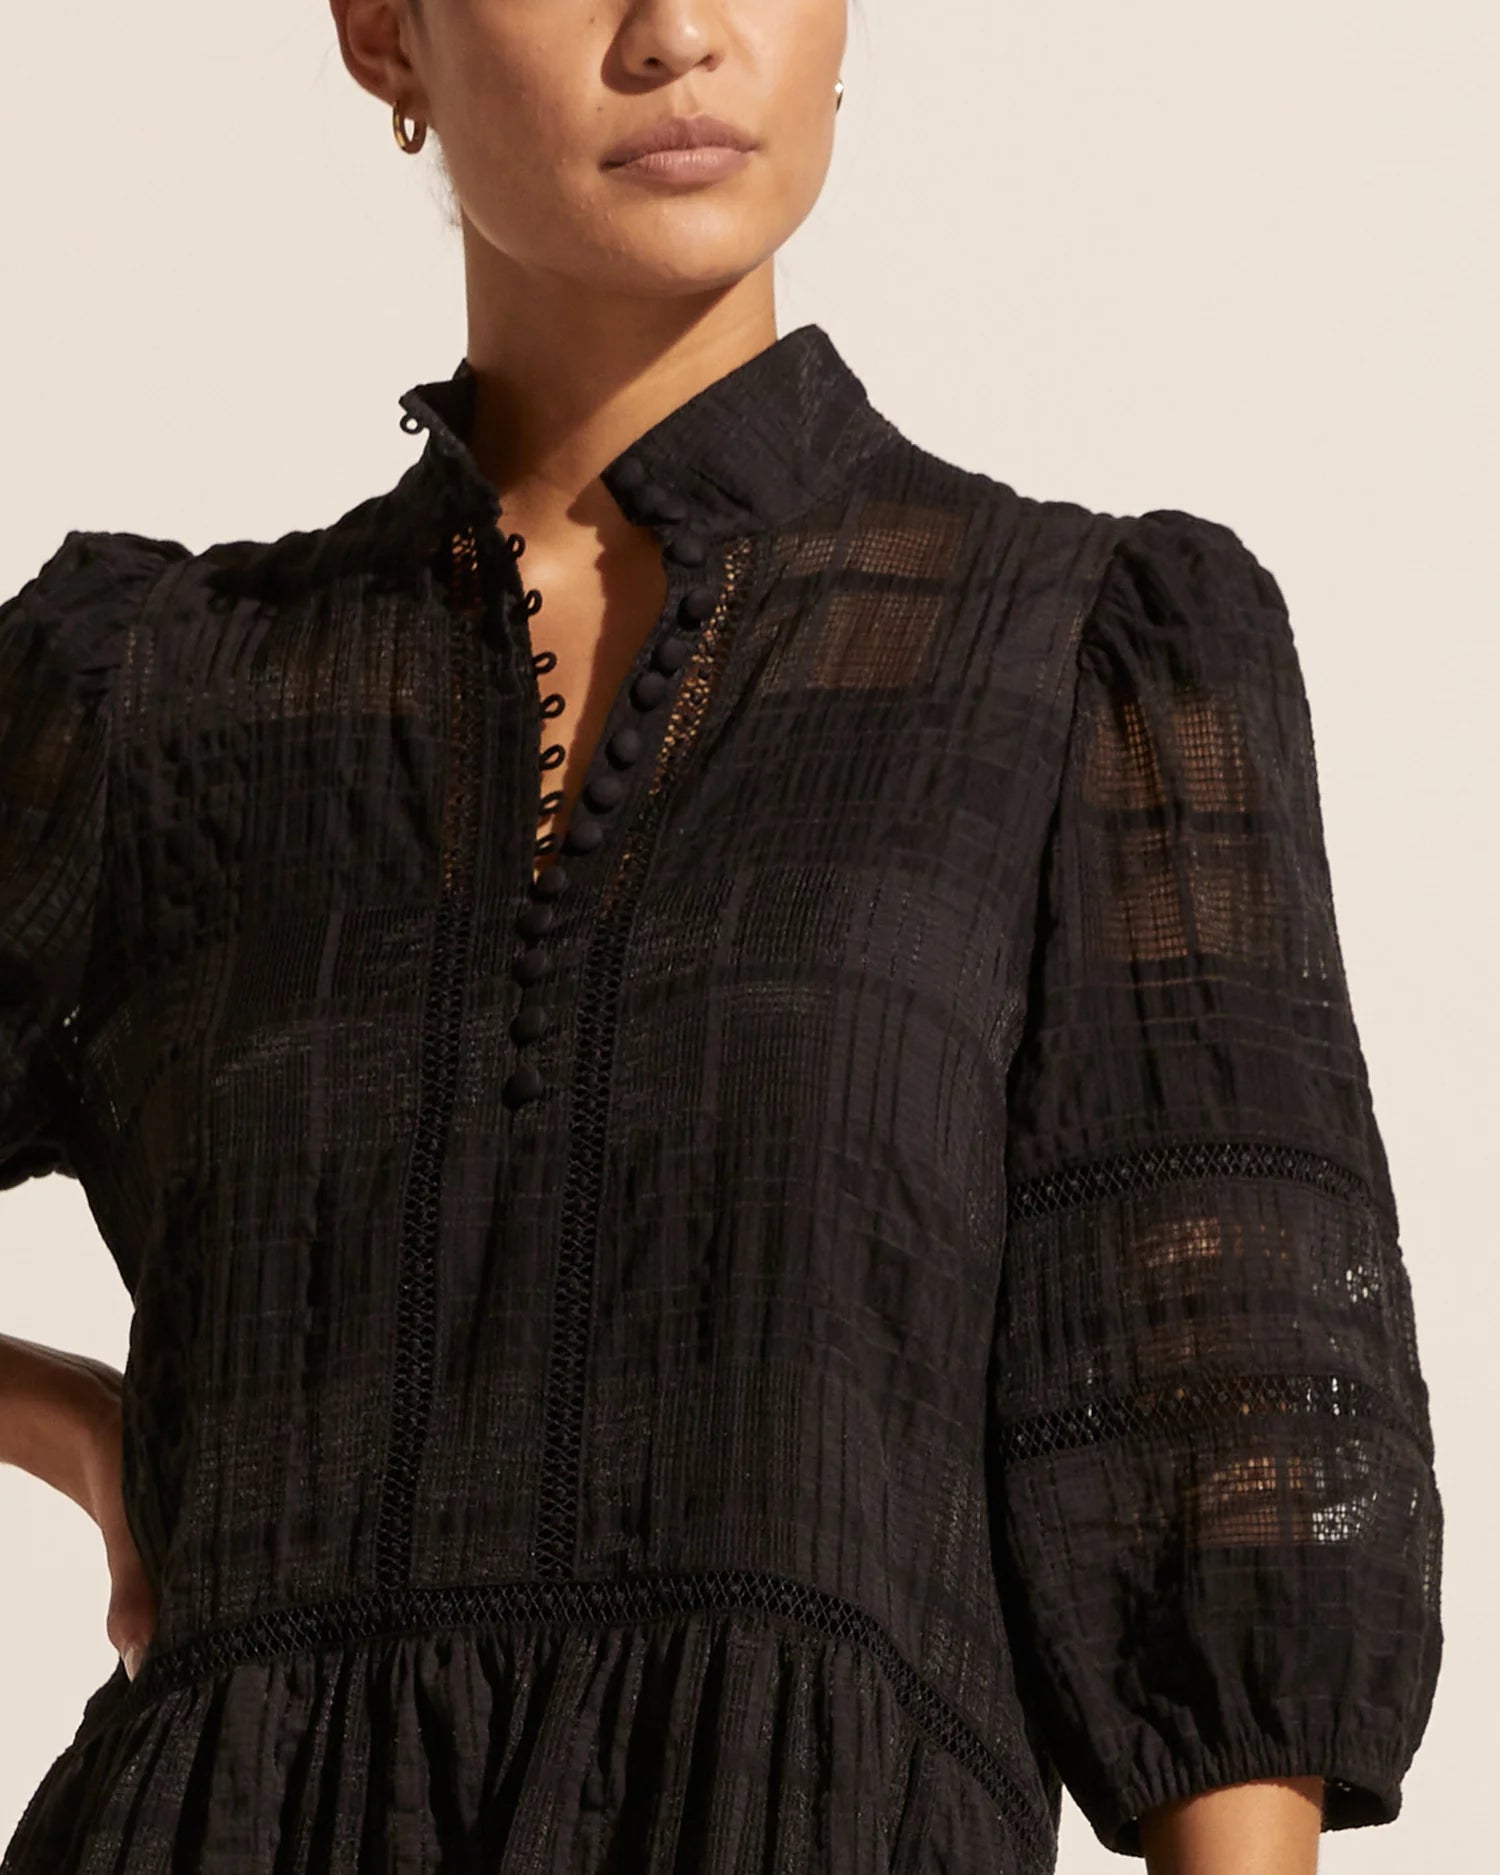 zoe kratzmann - Elixir Dress in Black - Women's Clothing - new arrivals  just in mini – Secret Girl Stuff